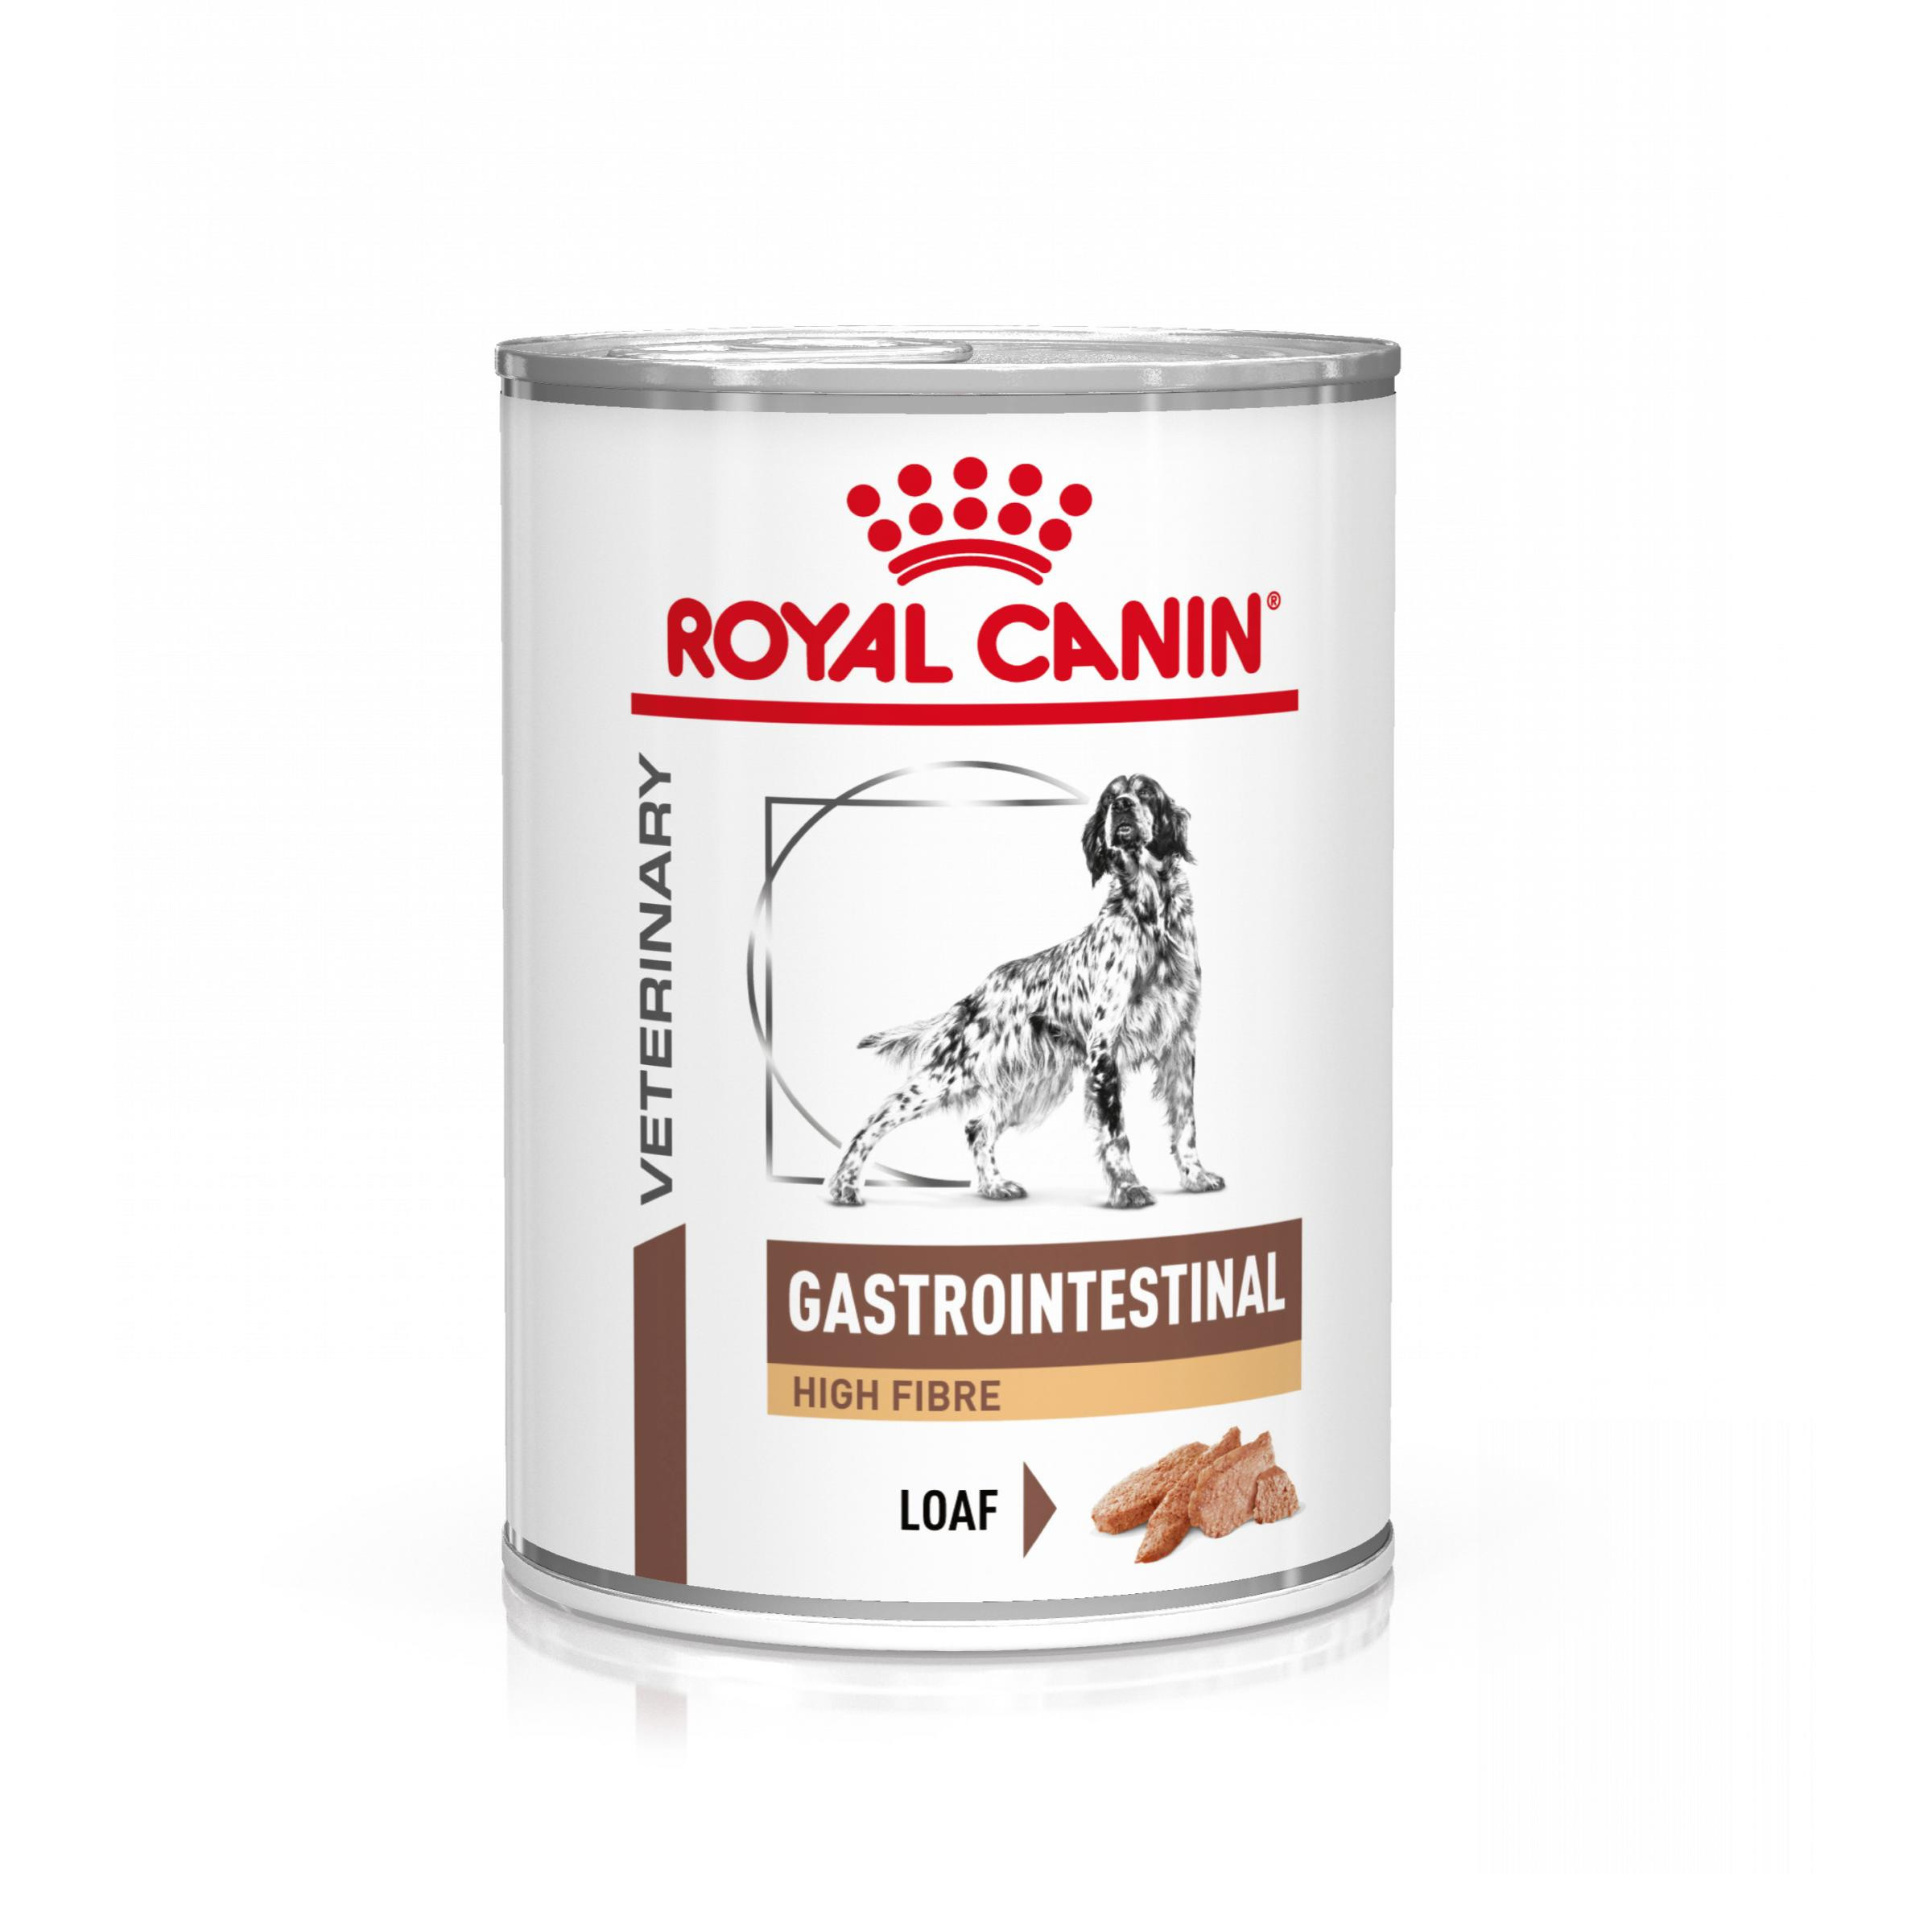 Immagine di 4 confezioni (48 x 410 g) Royal Canin Veterinary Gastrointestinal High Fibre cibo umido per cane